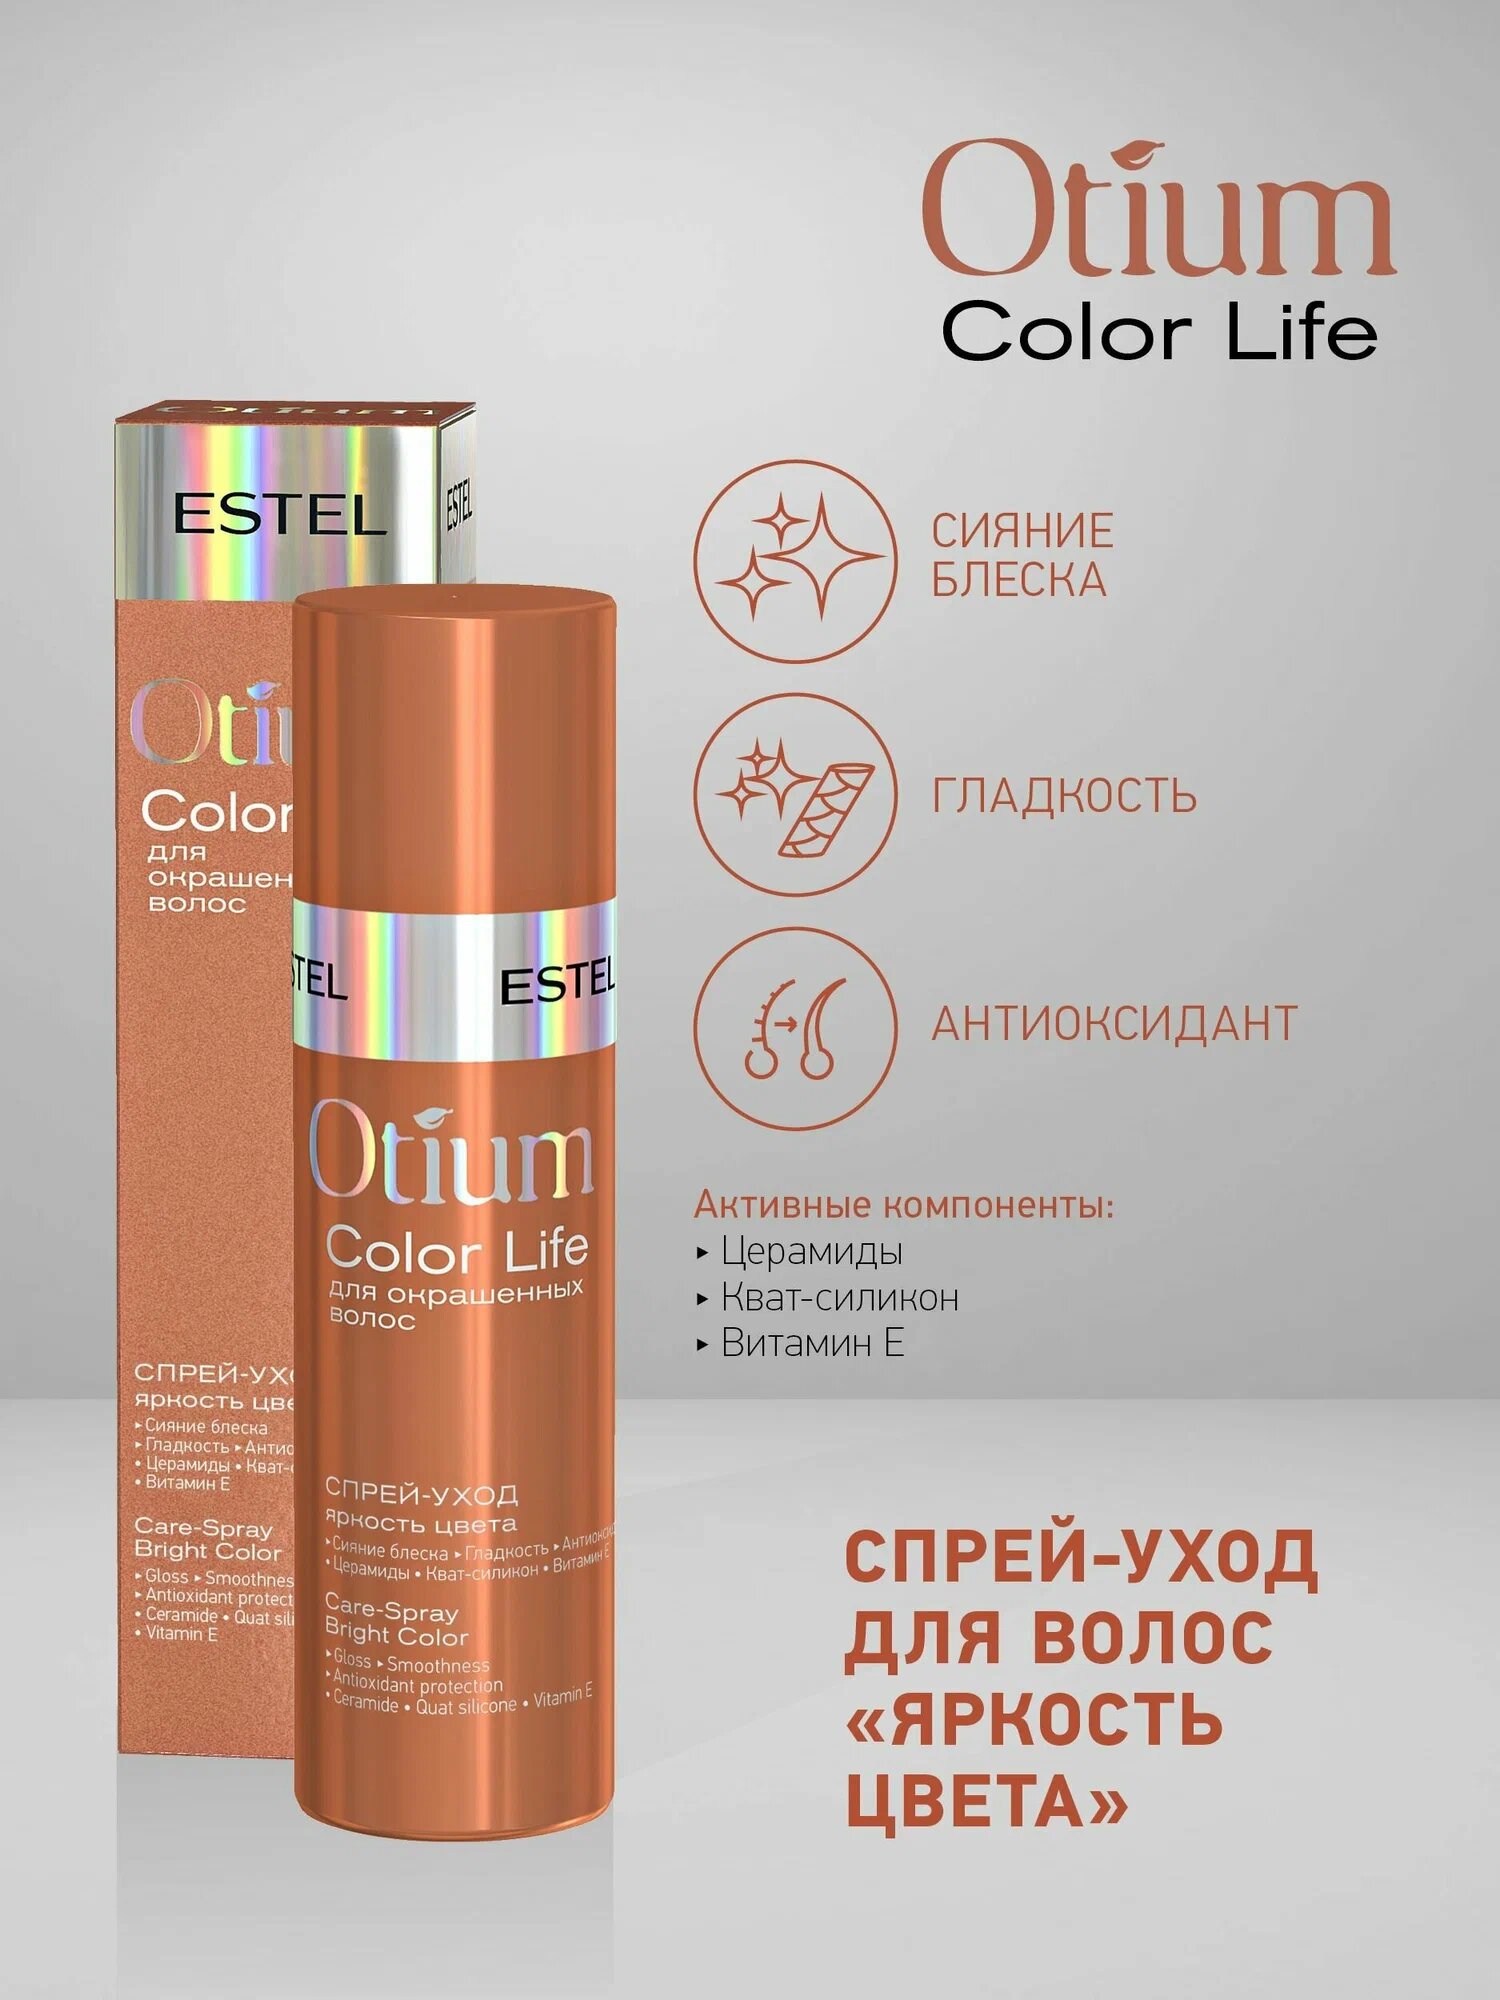 ESTEL OTIUM COLOR LIFE Спрей-уход Яркость цвета для окрашенных волос, 100 г, 100 мл, спрей